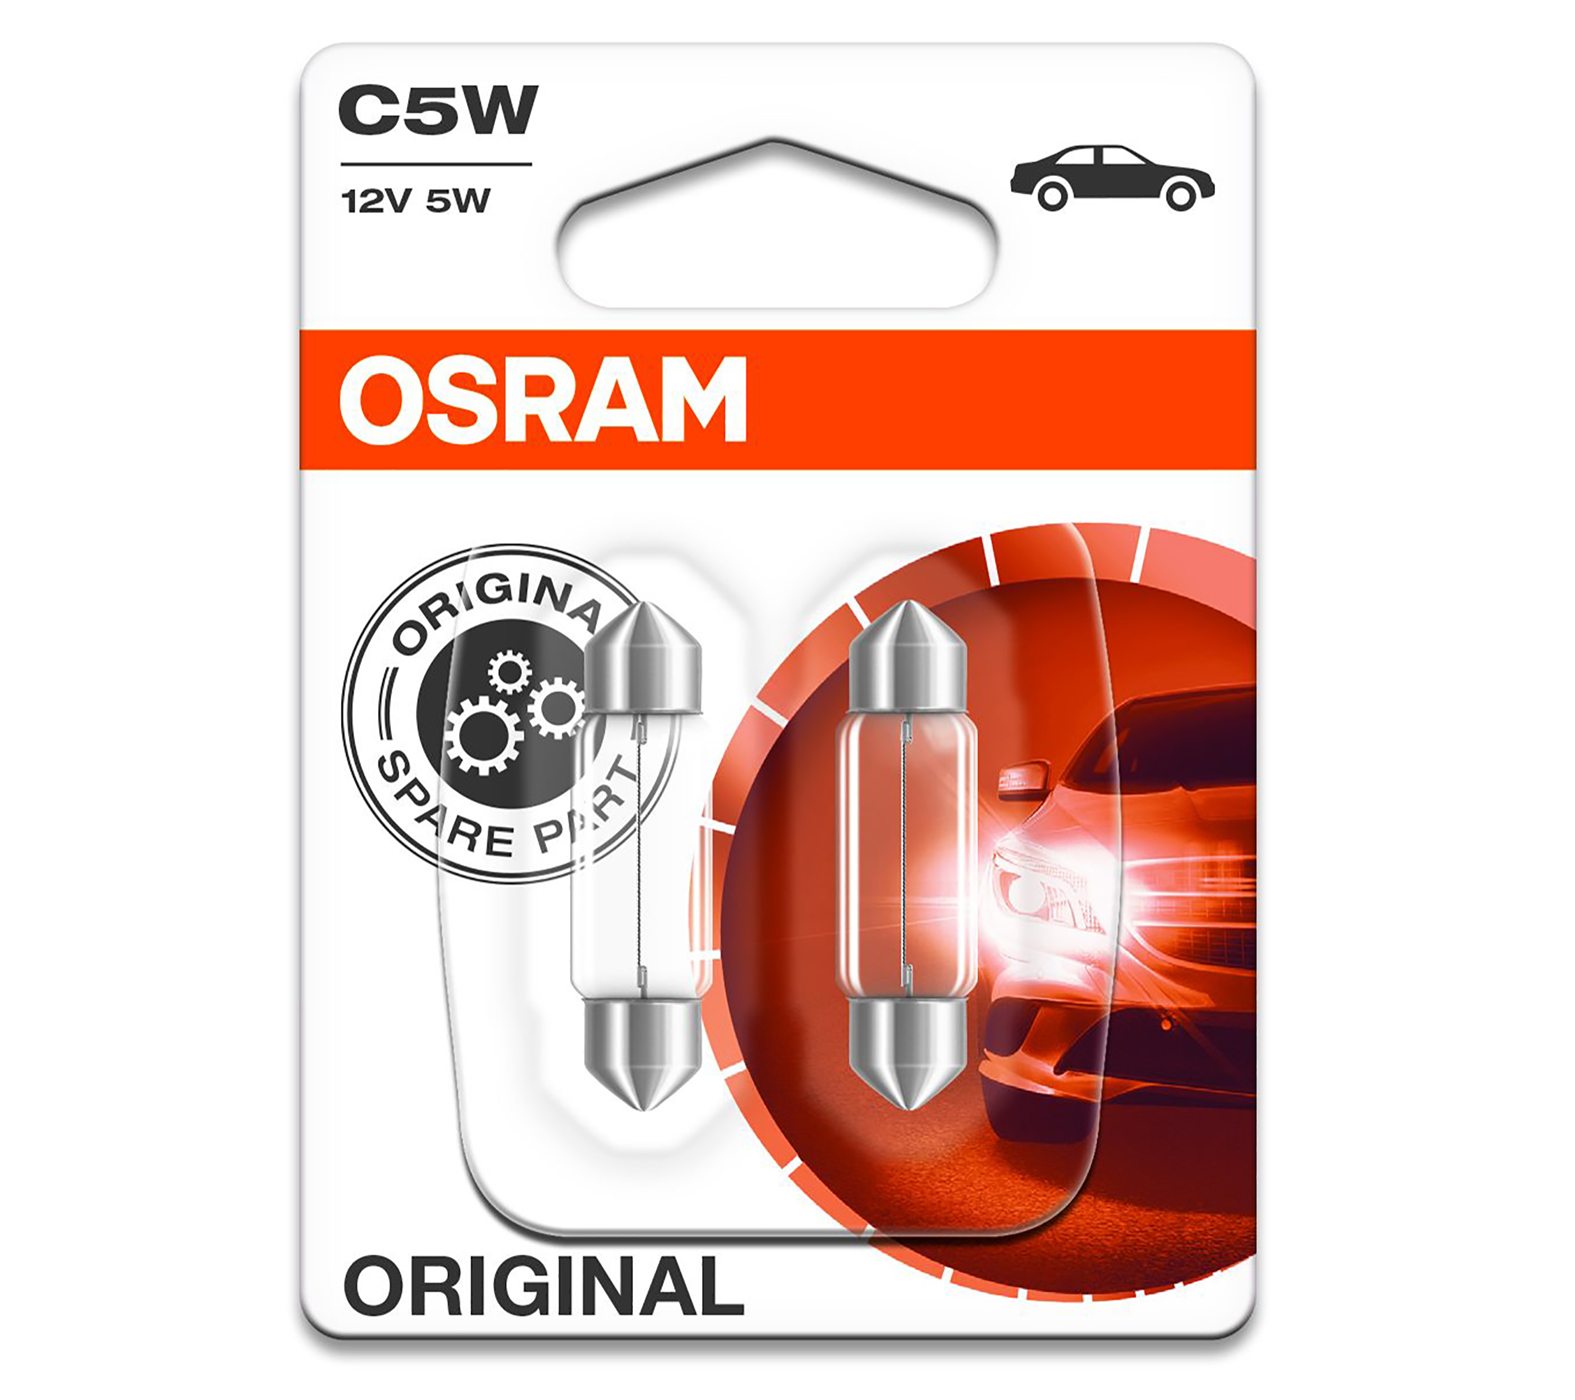 OSRAM Soffitten 12V 5W Kennzeichenbeleuchtung